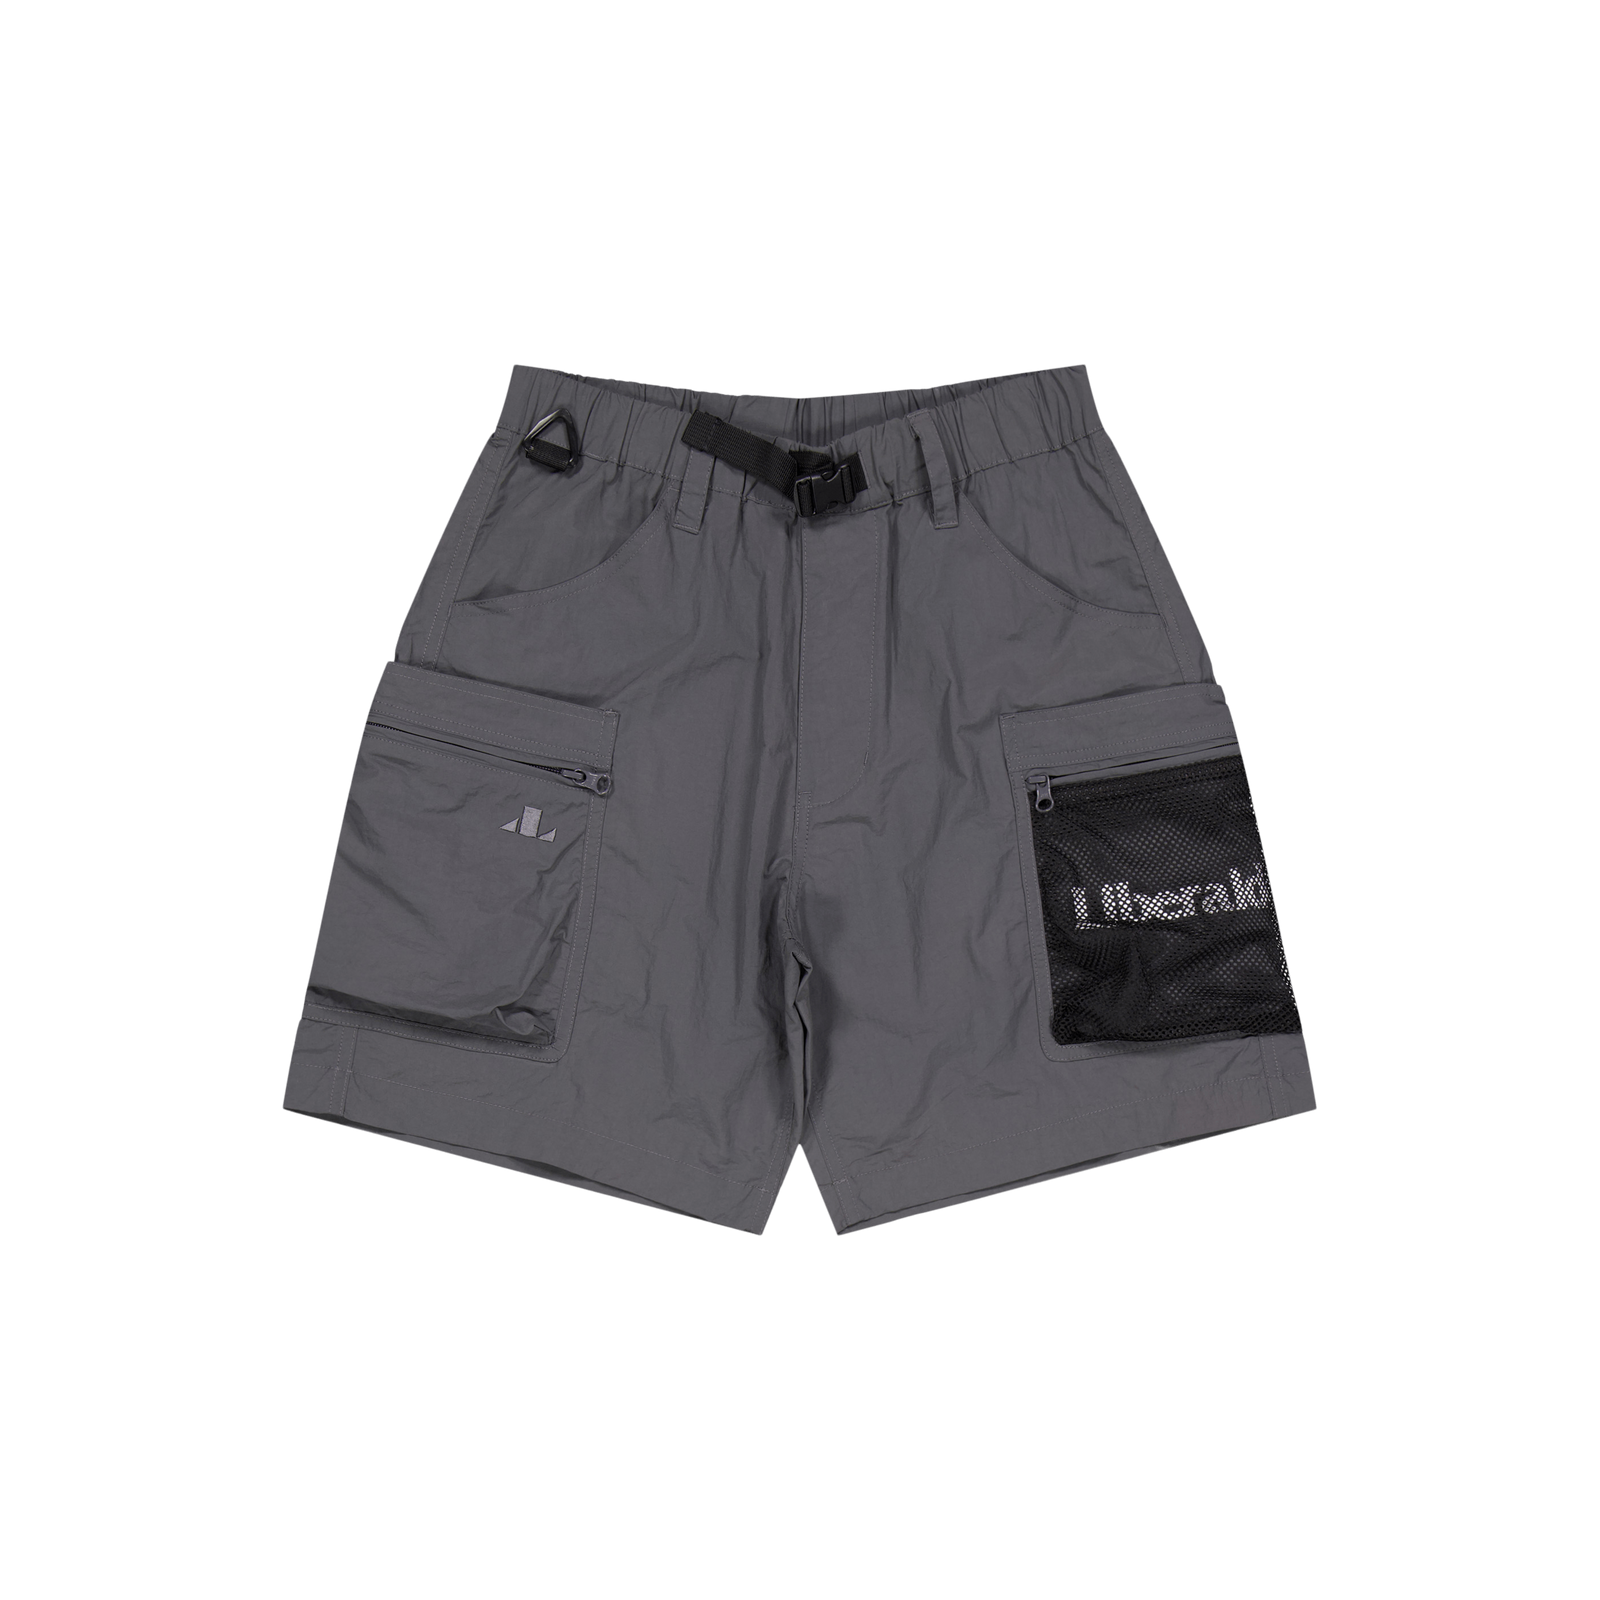 Lr Nylon Shorts Ii Charcoal